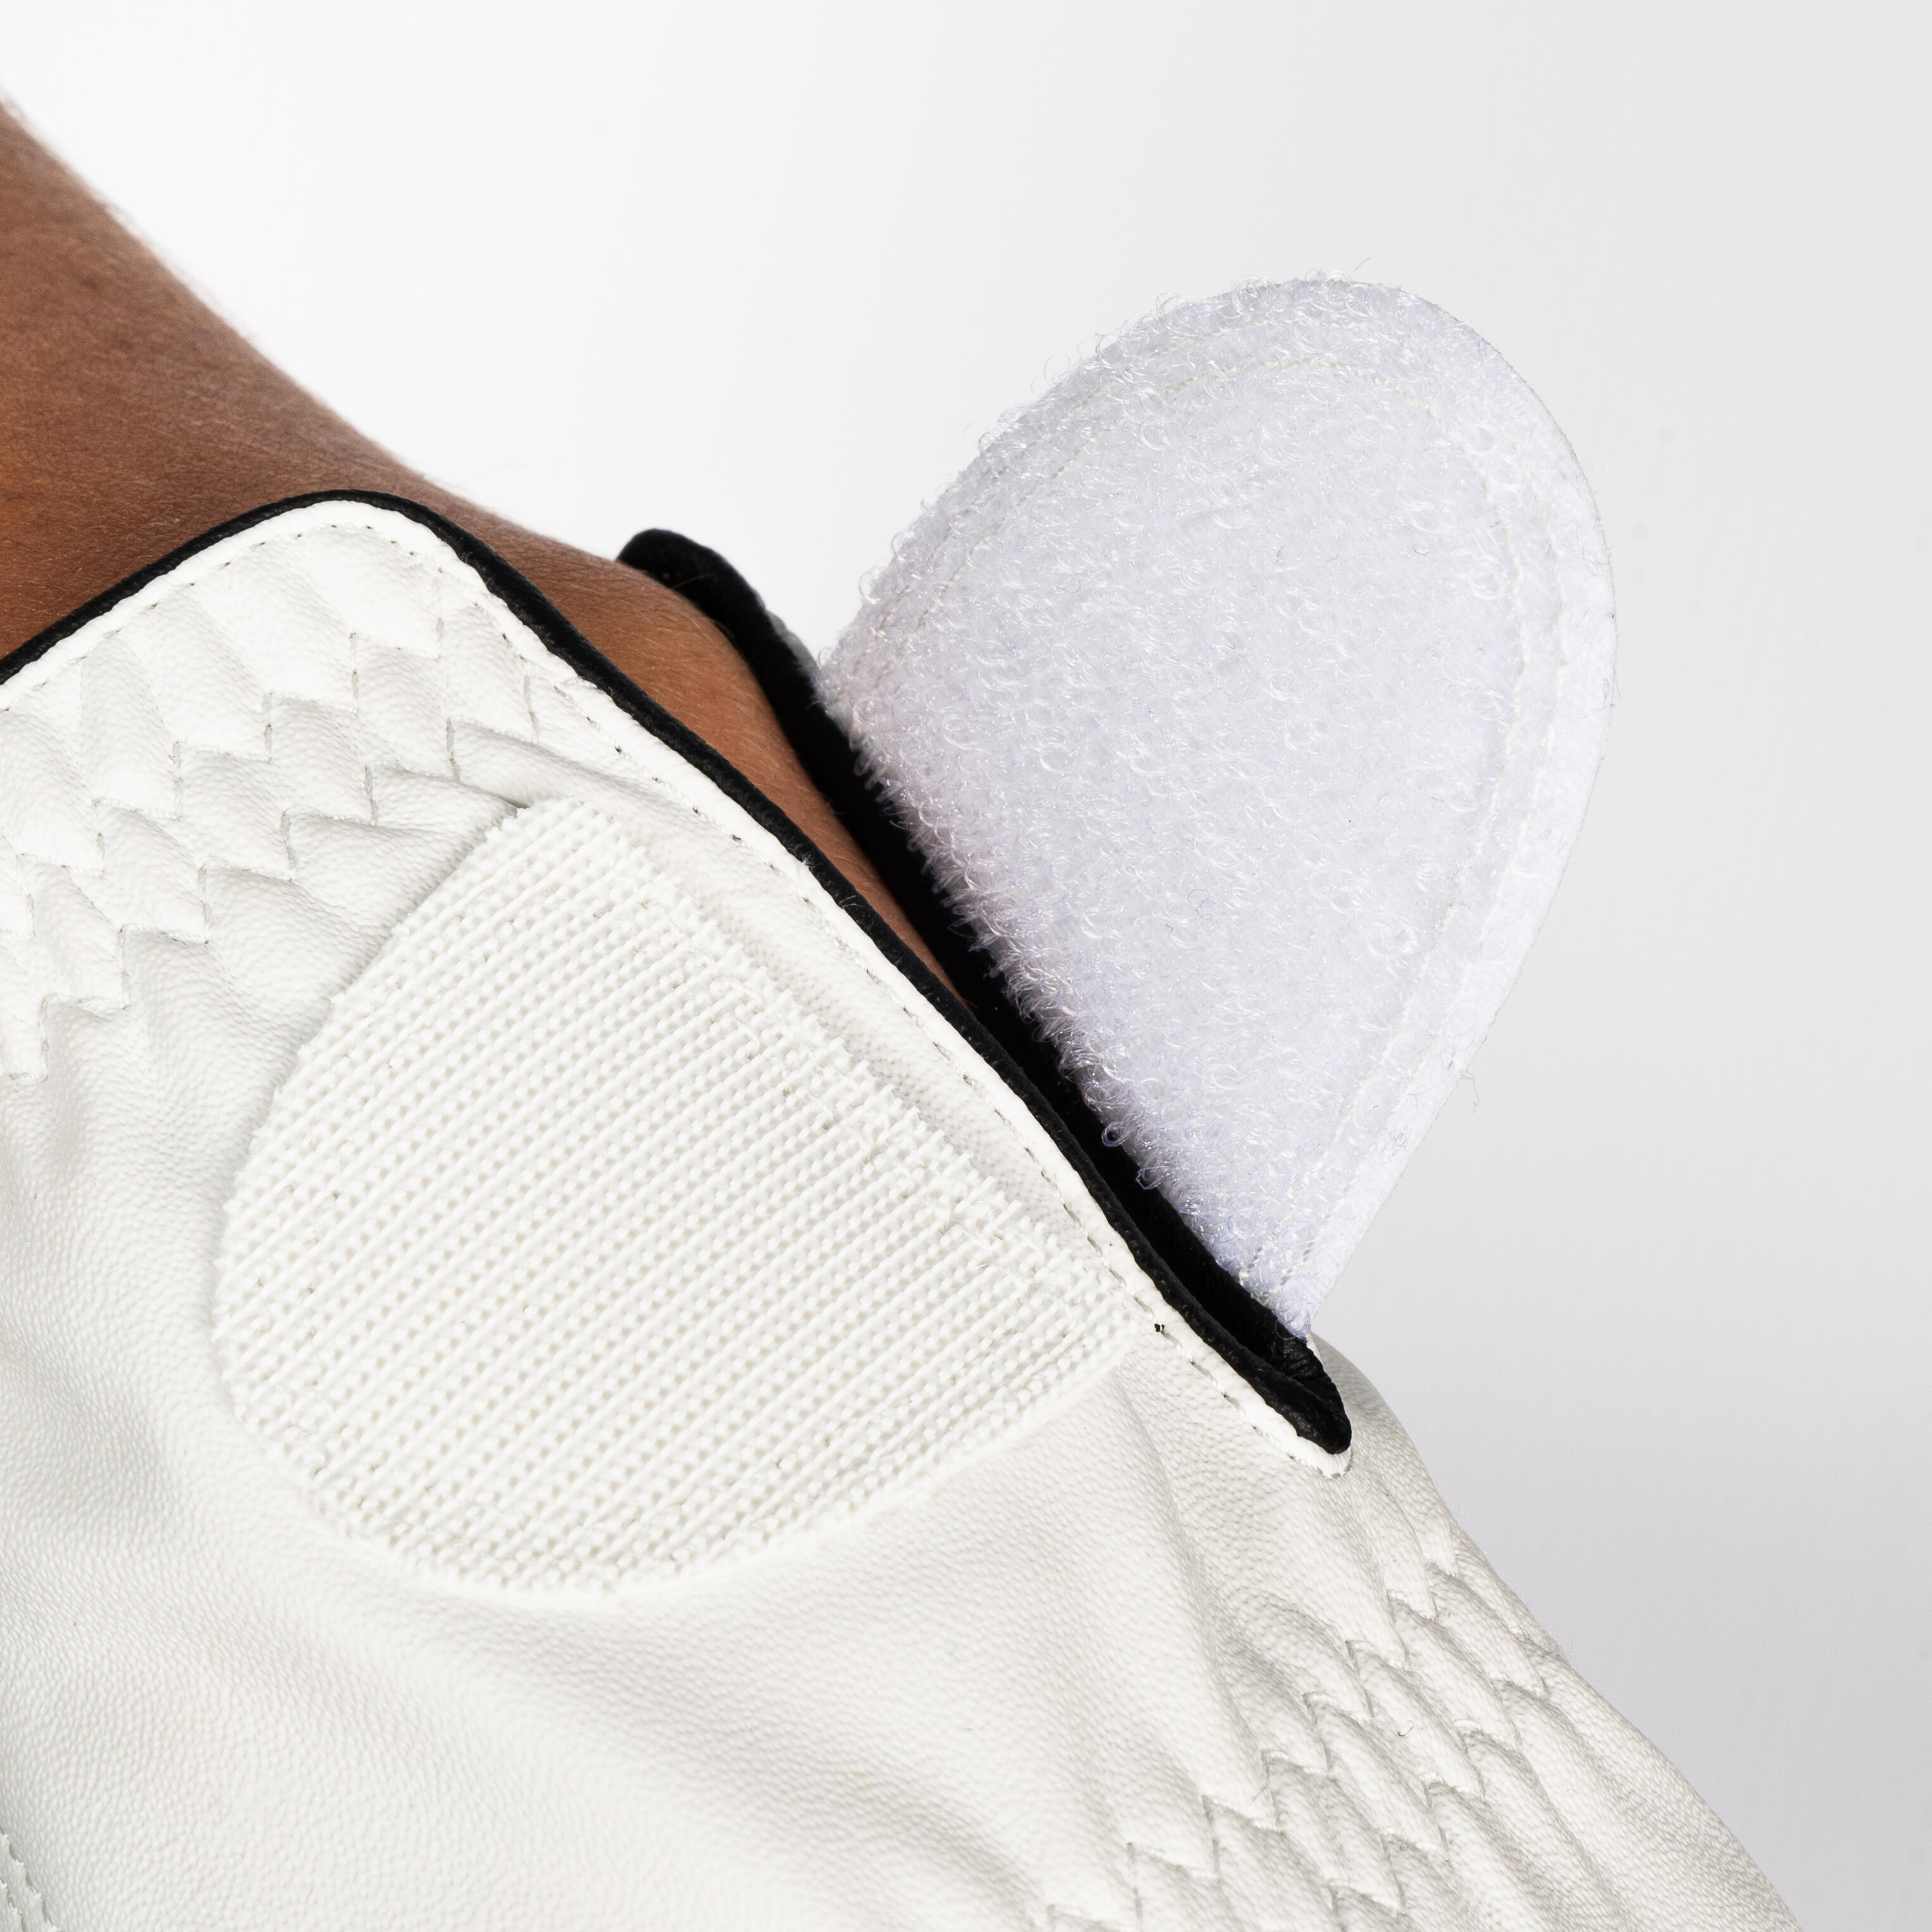 Gant de golf pour droitière femme - Soft 500 blanc - INESIS